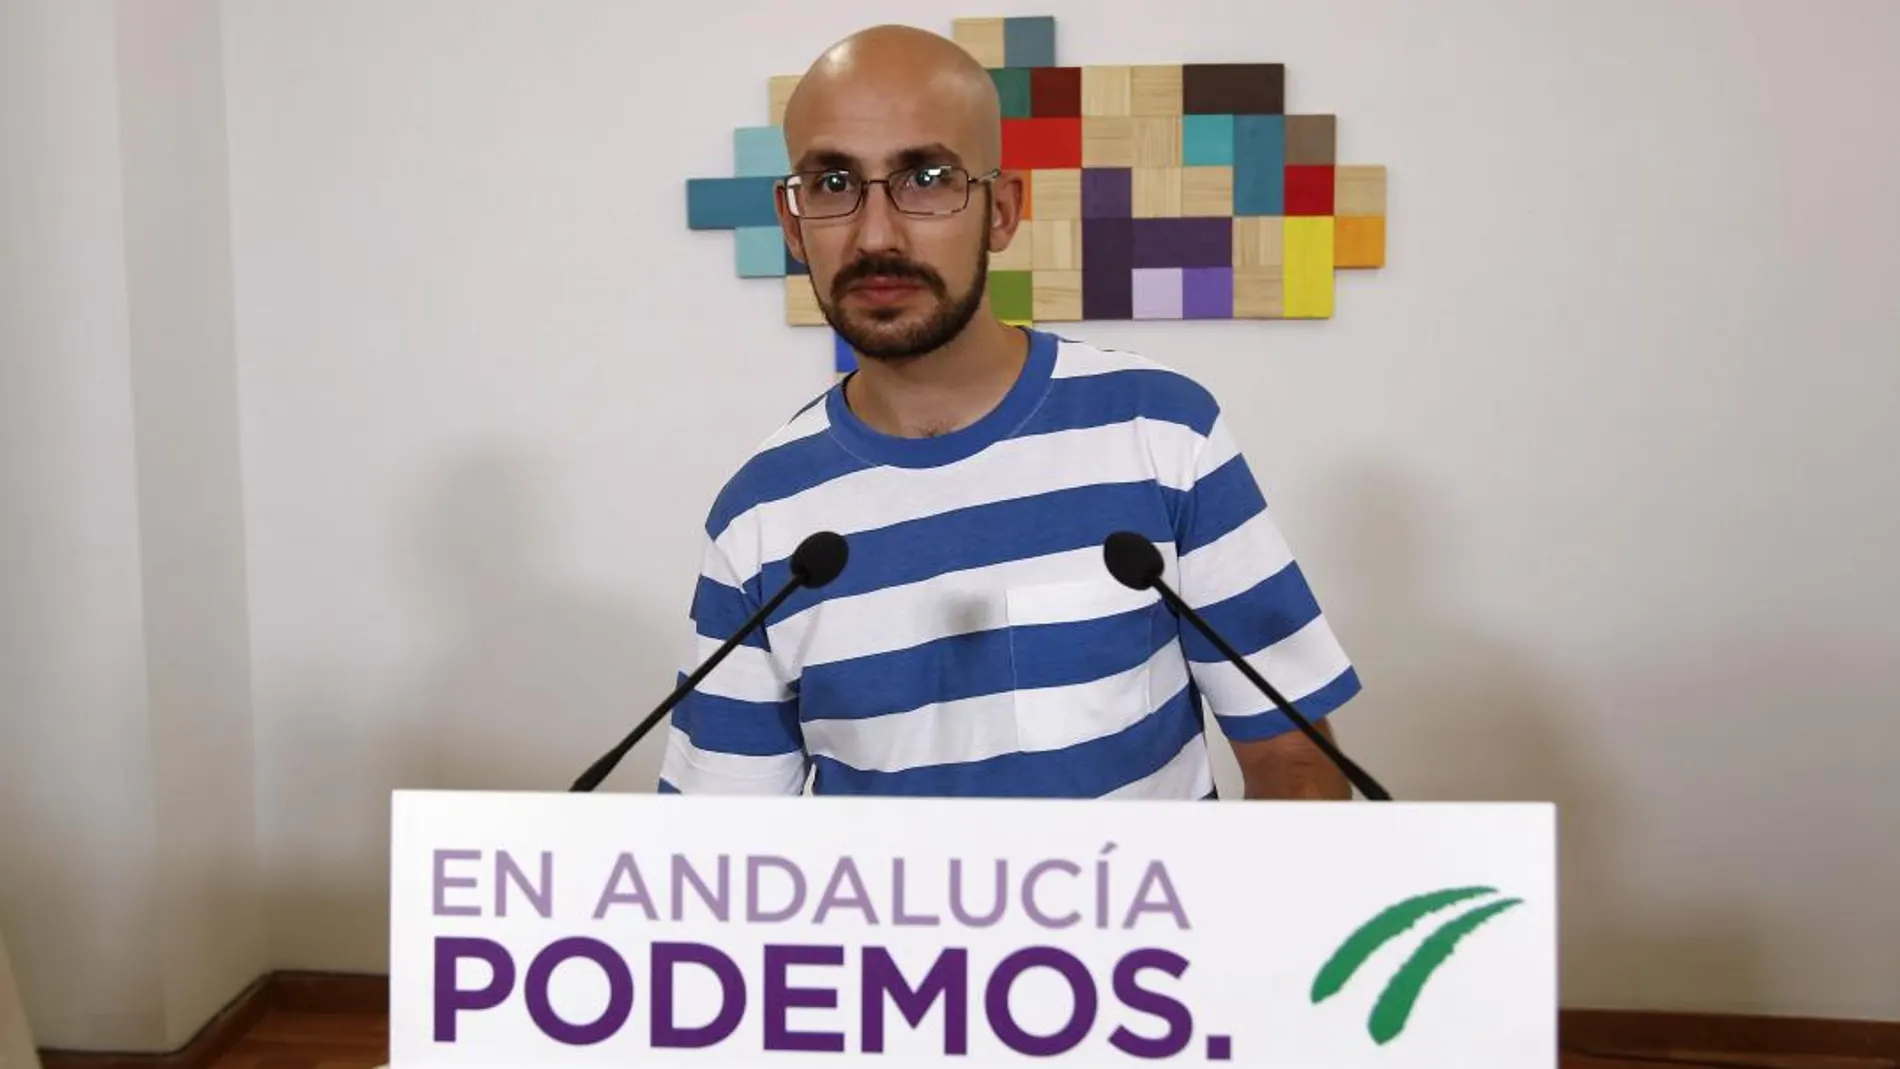 El secretario de Comunicación y Política de Podemos, Pablo Pérez, anunció ayer que el candidato de Adelante Andalucía a la Junta se elegirá el próximo 2 de octubre (Foto: Manuel Olmedo)